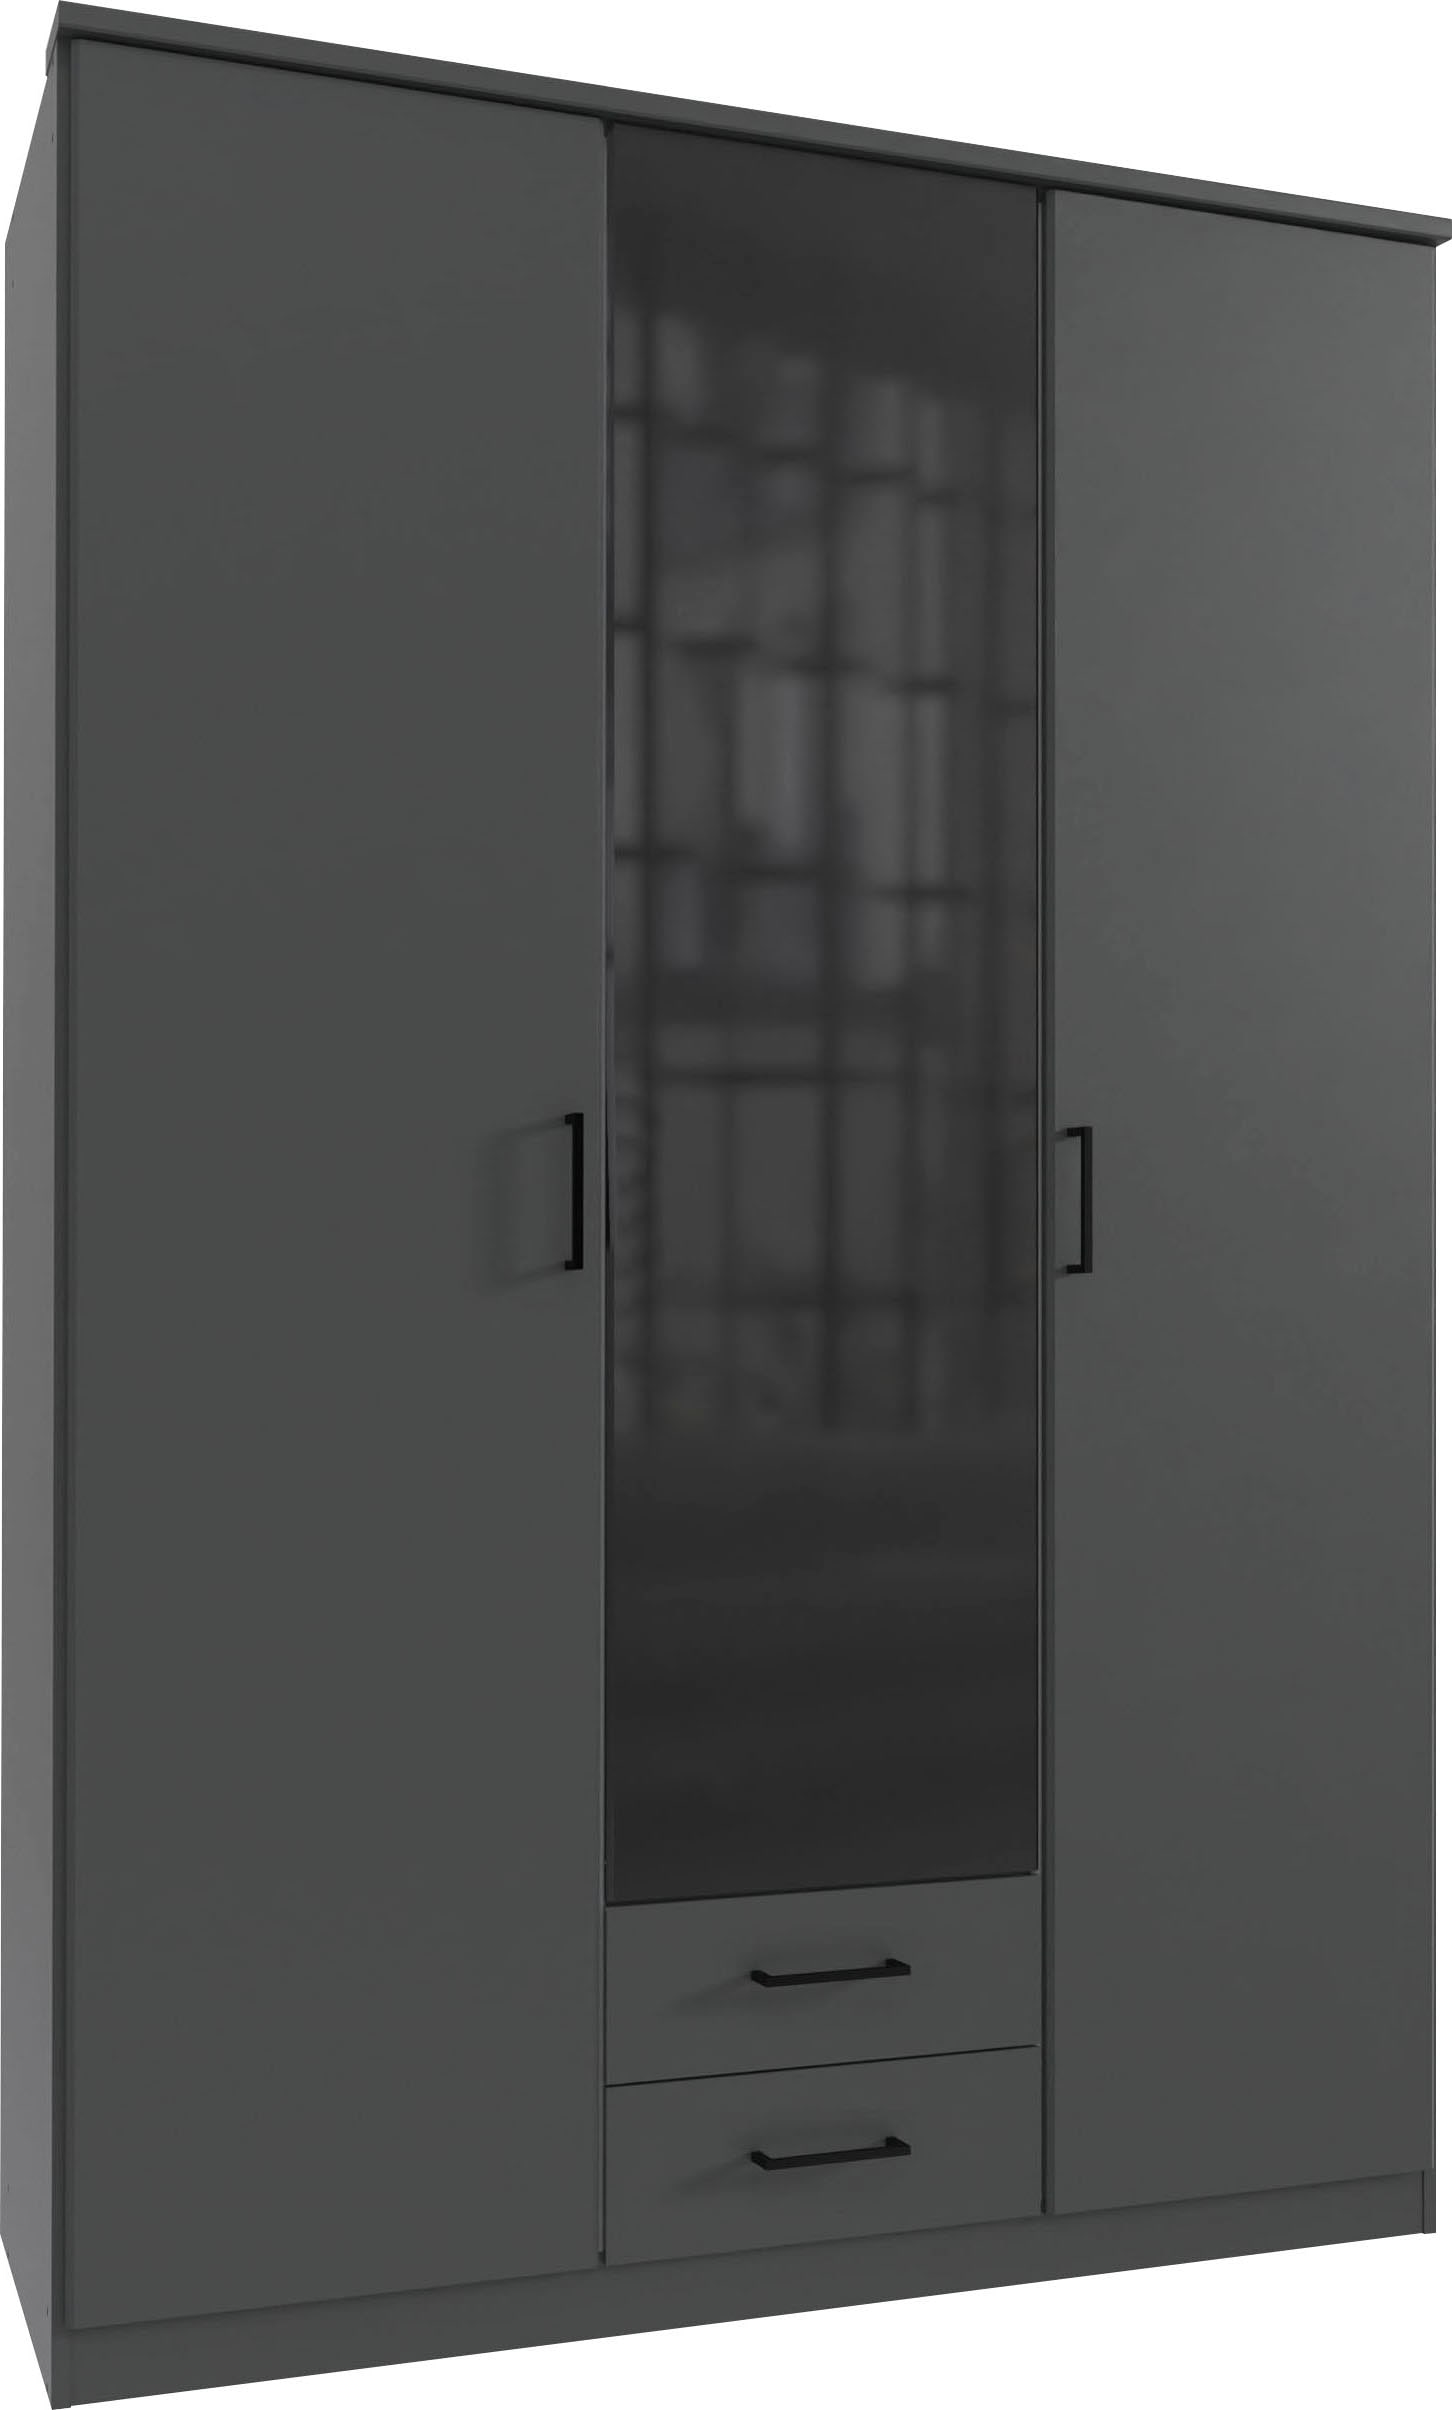 Wimex Drehtürenschrank »Soest«, mit Farbglas-Tür, wahlweise 135 oder 180cm breit